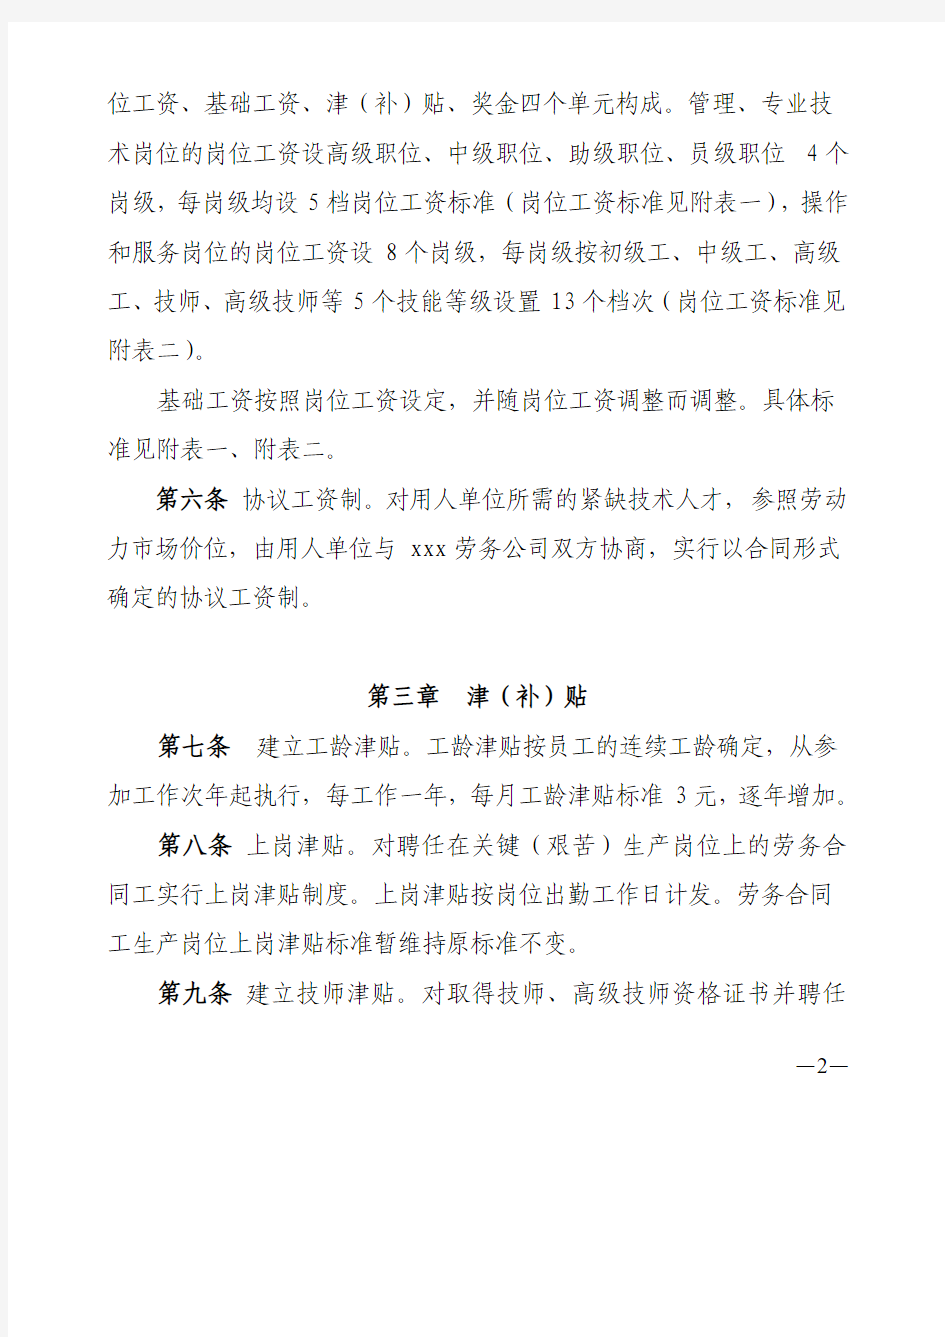 中国xxx劳务有限责任公司基本工资制度改革方案